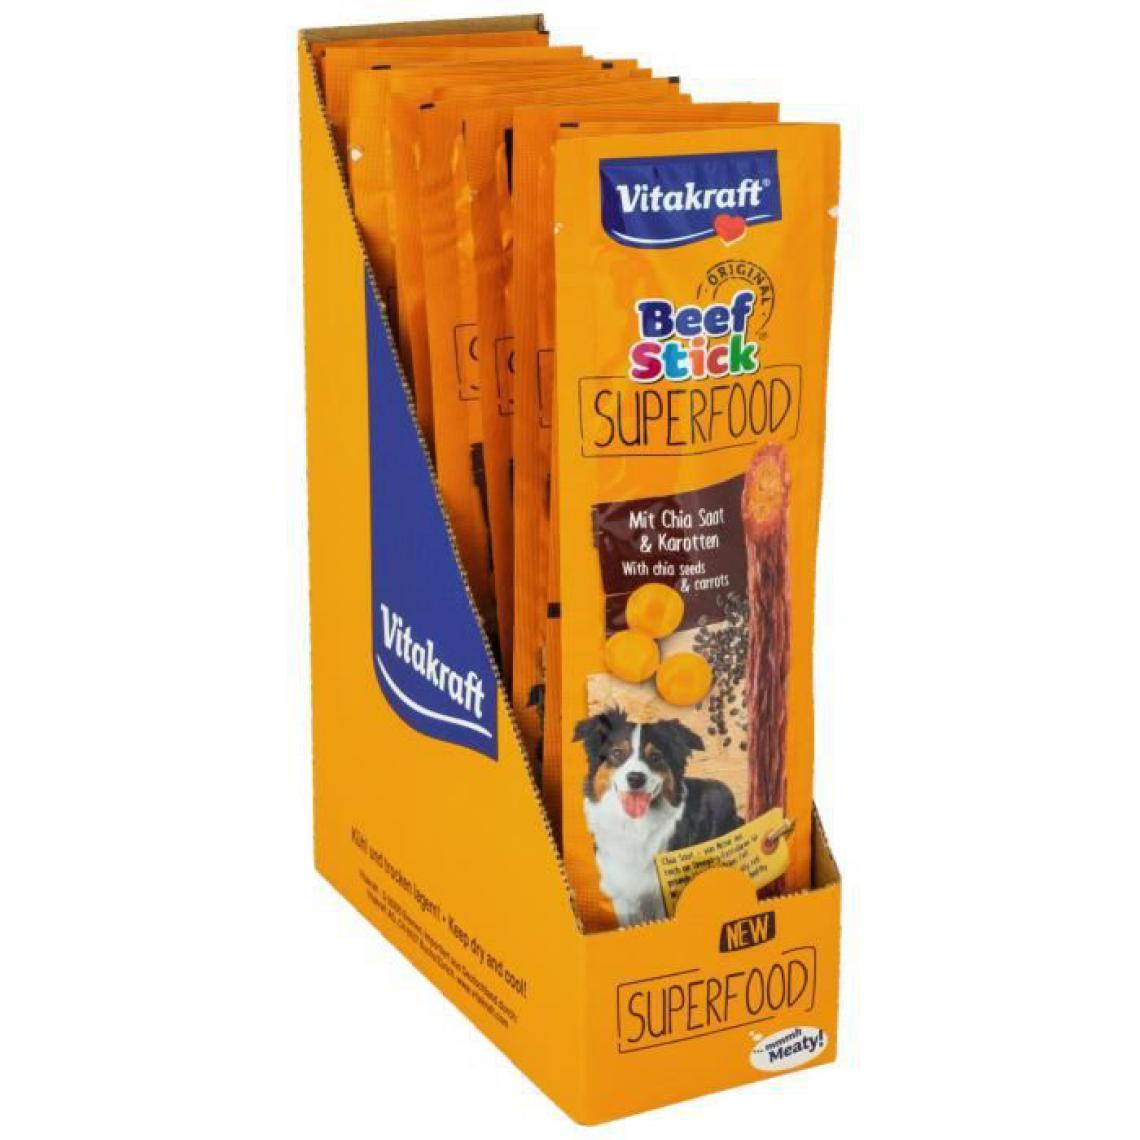 Vitakraft - VITAKRAFT Beef Stick Superfood Friandise pour chien Carottes et Graines de chia - Lot de 15x25g - Croquettes pour chien